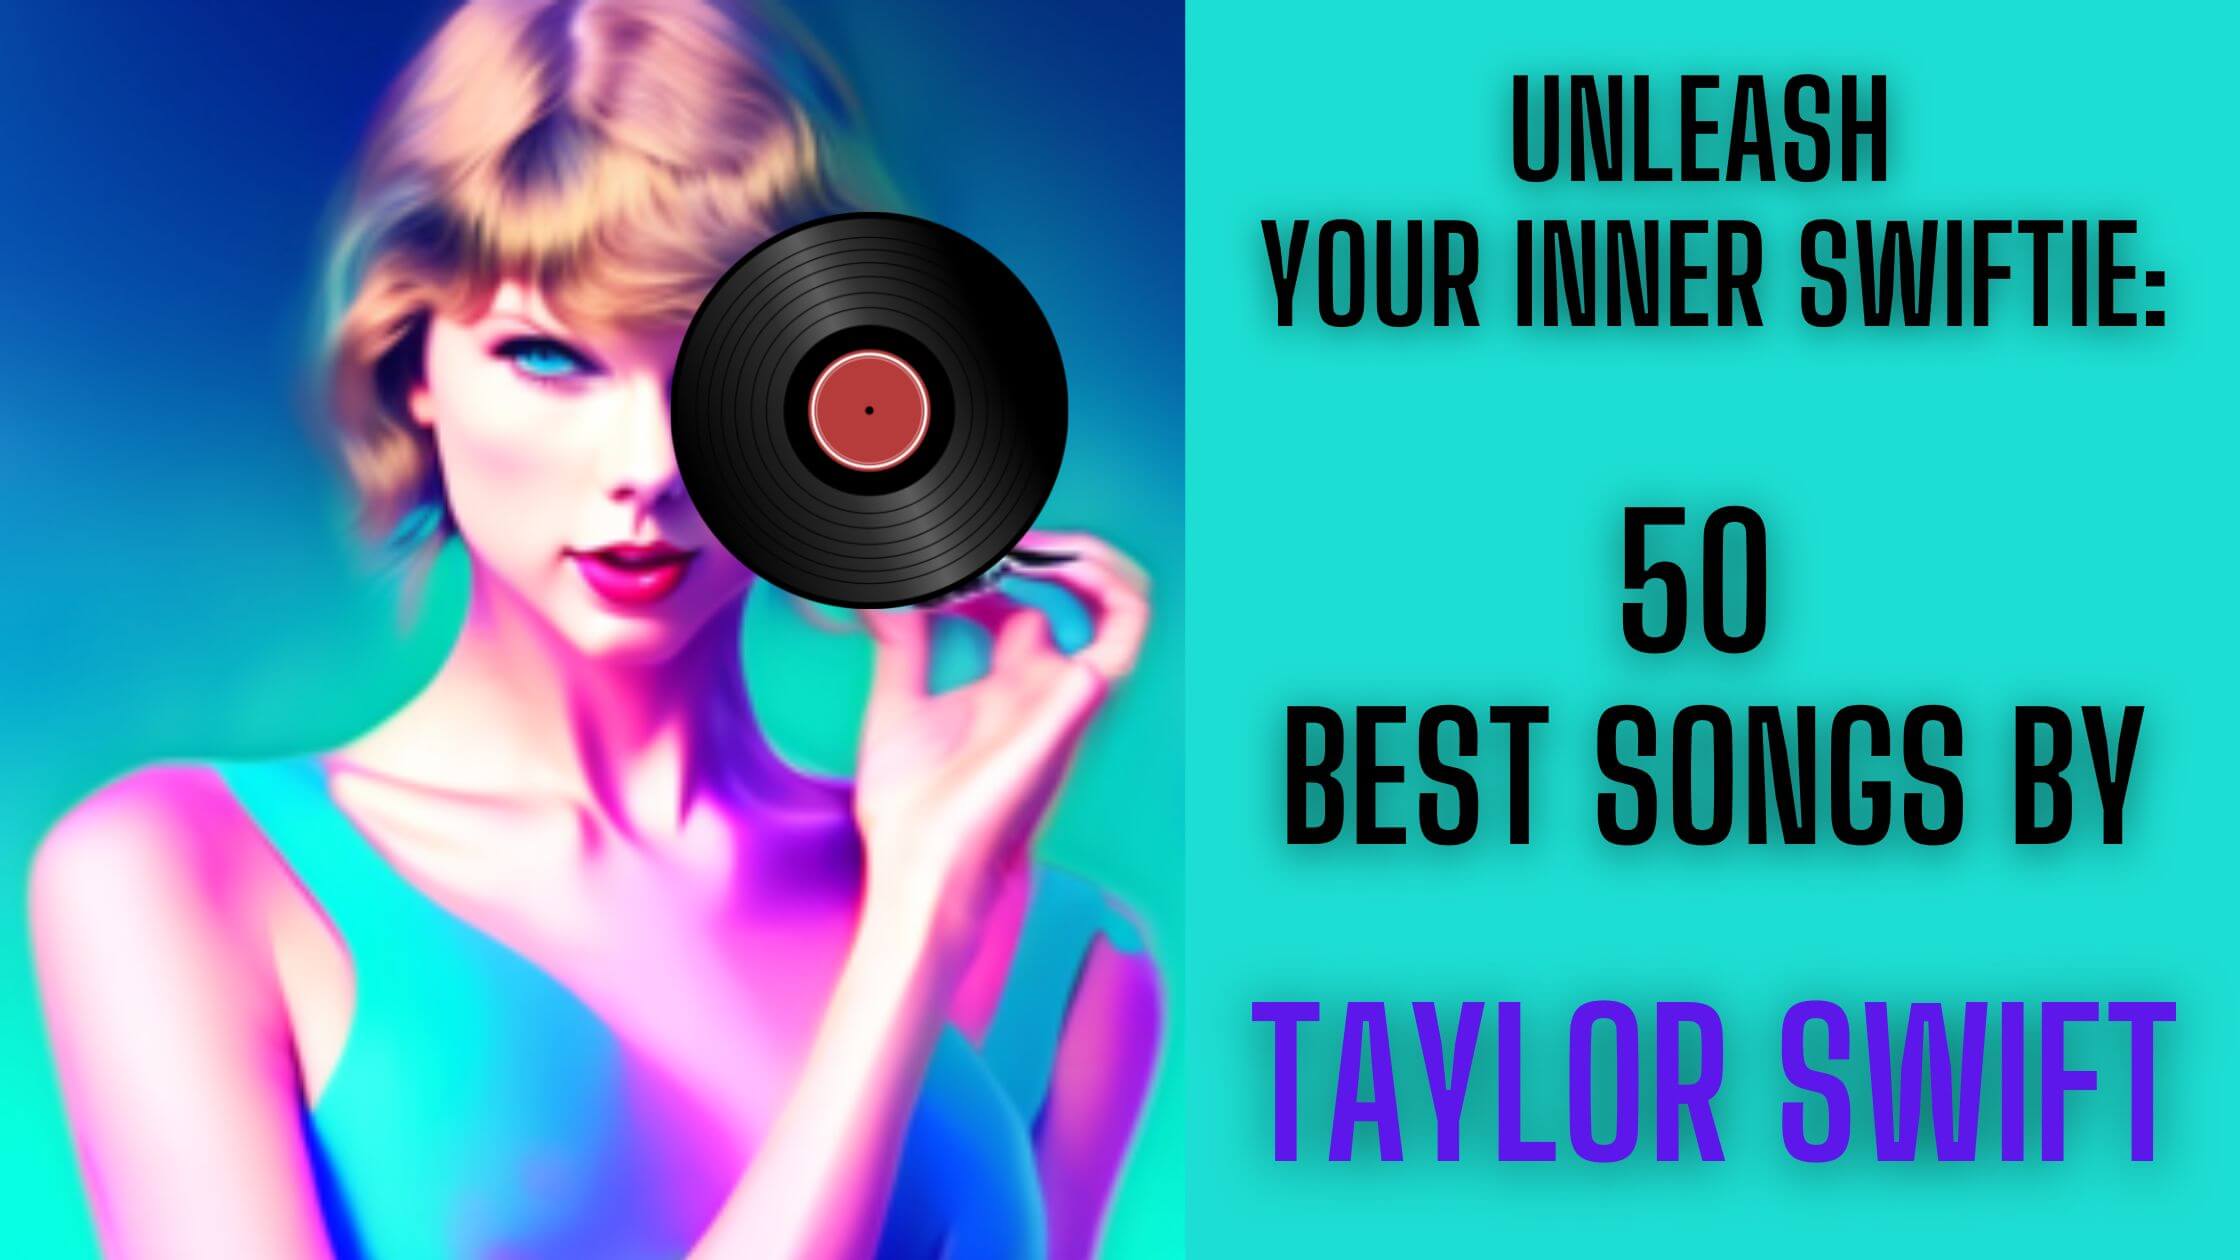 50 Best Songs by Taylor Swift – Unleash Your Inner Swiftie.